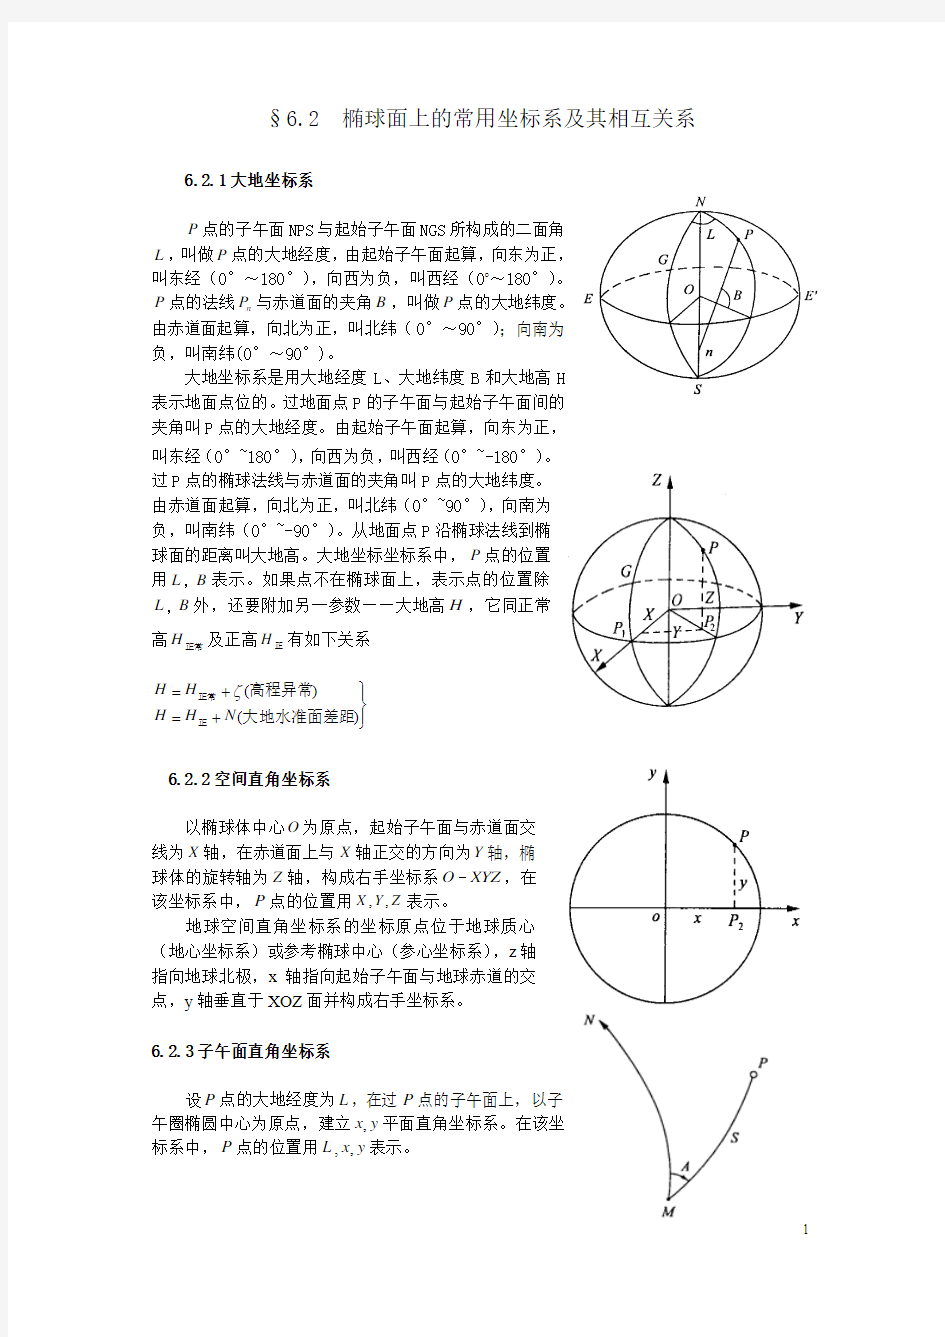 椭球面上的常用坐标系及其相互关系